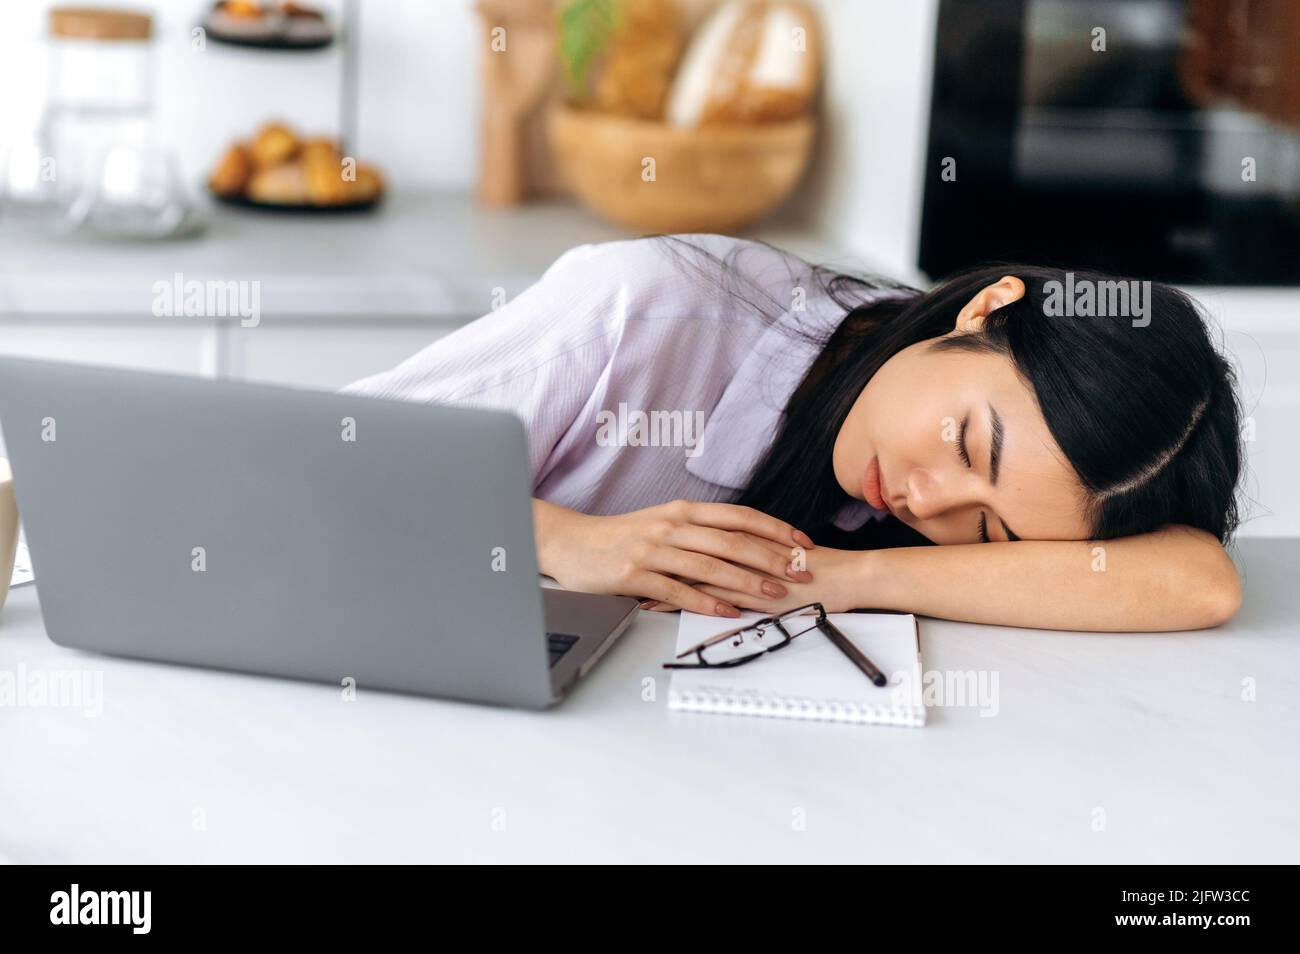 Une jeune femme d'origine chinoise somnolente s'endormit alors qu'elle était assise sur le lieu de travail près d'un ordinateur portable dans la cuisine, fatiguée d'un travail ennuyeux, surtraitée, souffrant de privation chronique de sommeil, a besoin de repos Banque D'Images